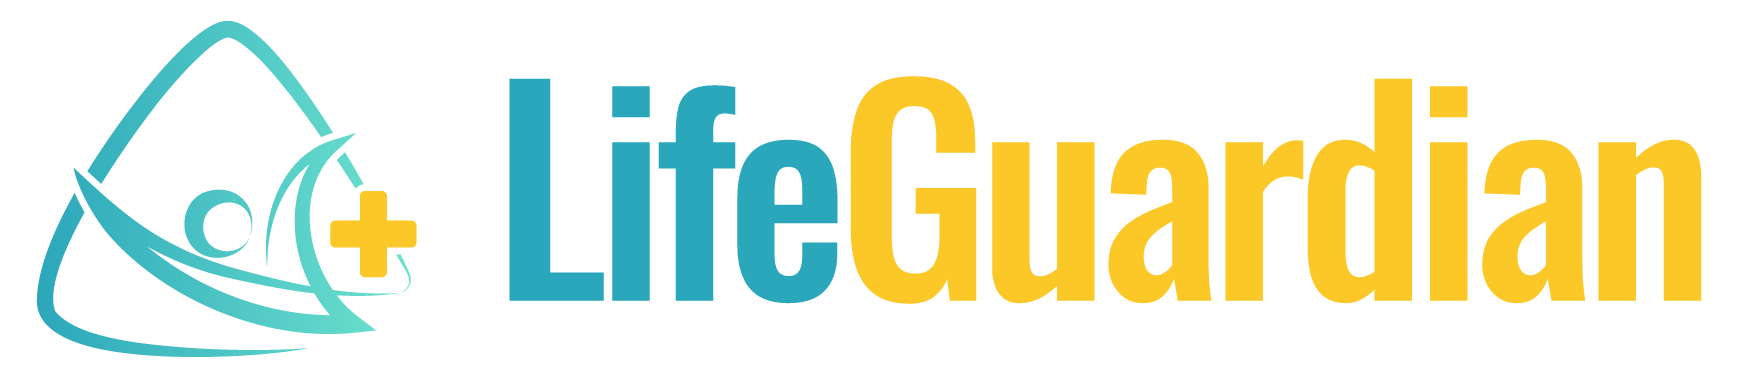 LifeGuardian logo